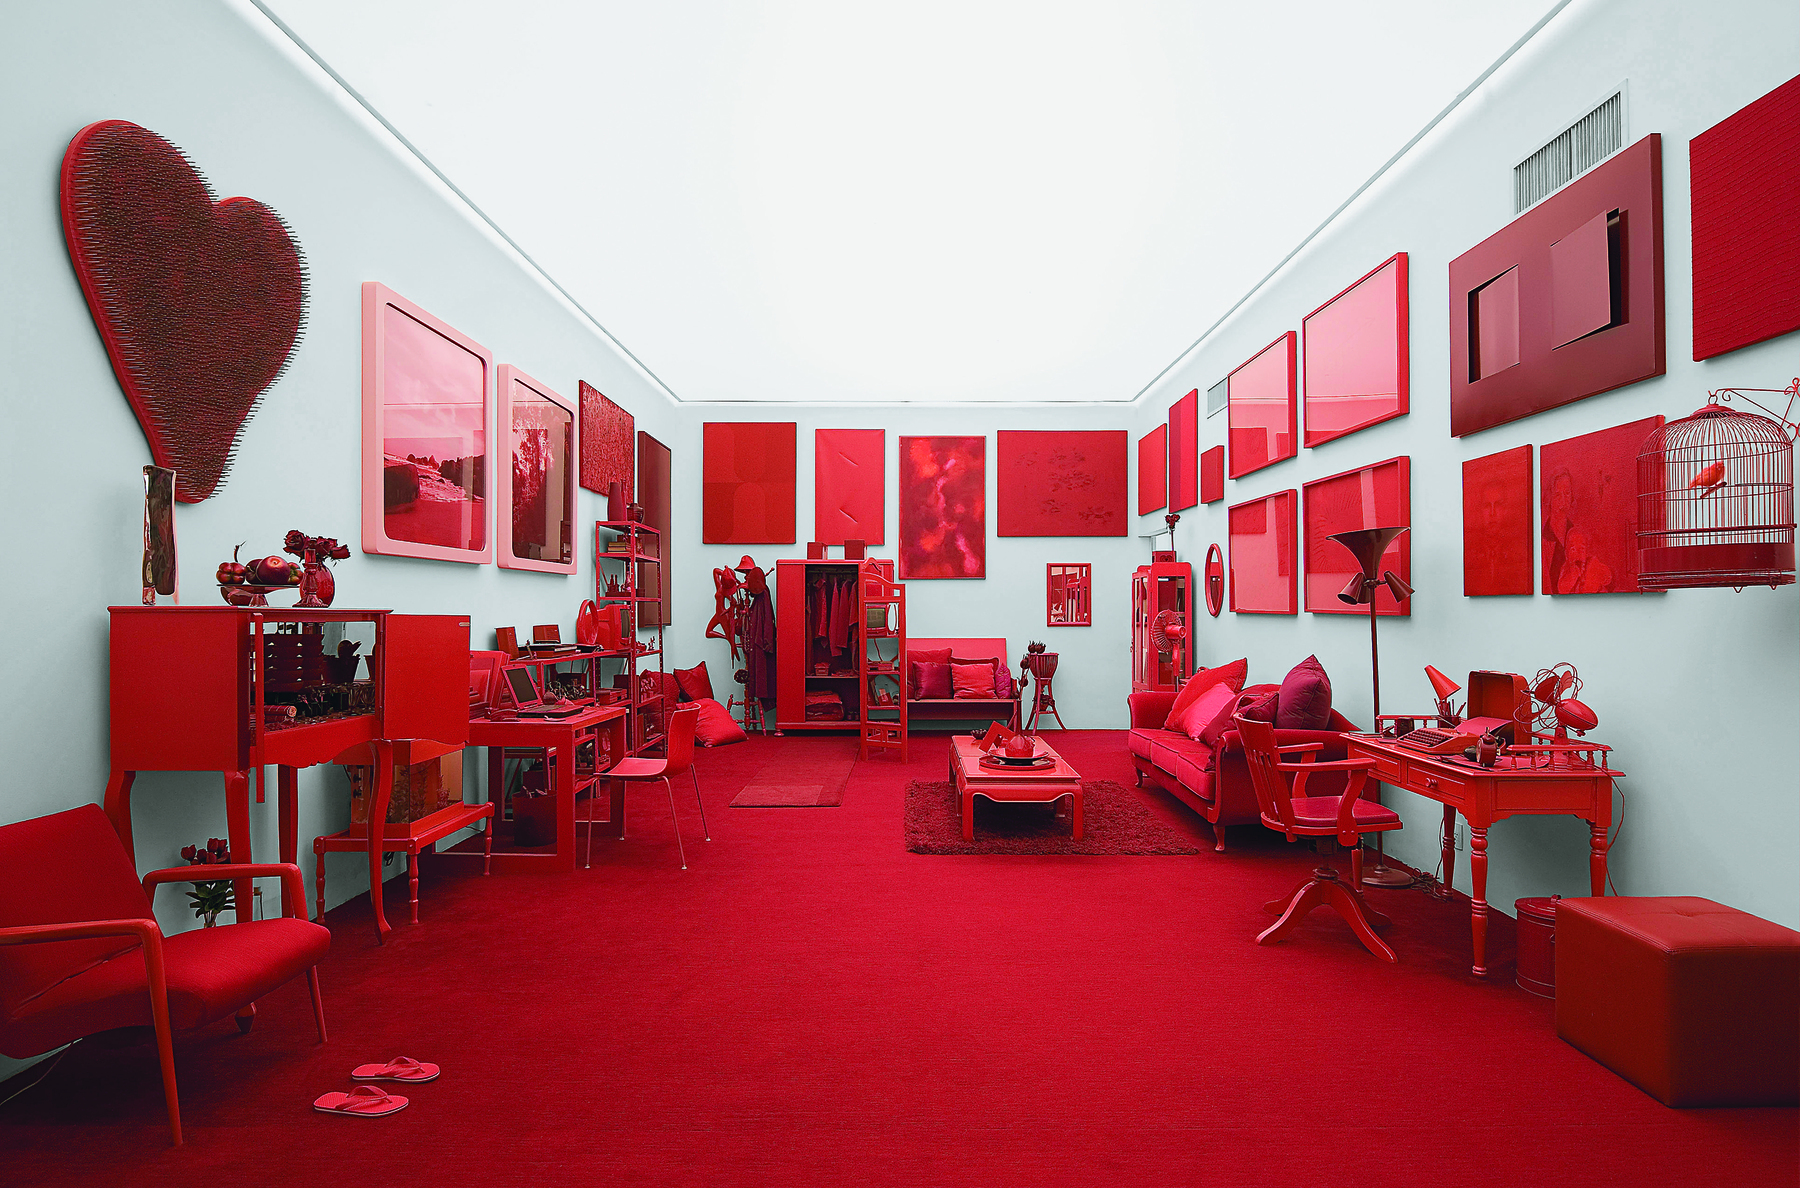 Fotografia. Instalação feita com diversos objetos na cor vermelha em uma sala ampla retangular com paredes cinza claro e teto branco iluminado. Há quadro vermelhos nas paredes e o chão também é vermelho. Há móveis na mesma cor, como sofás, cadeiras, armários, mesas etc.